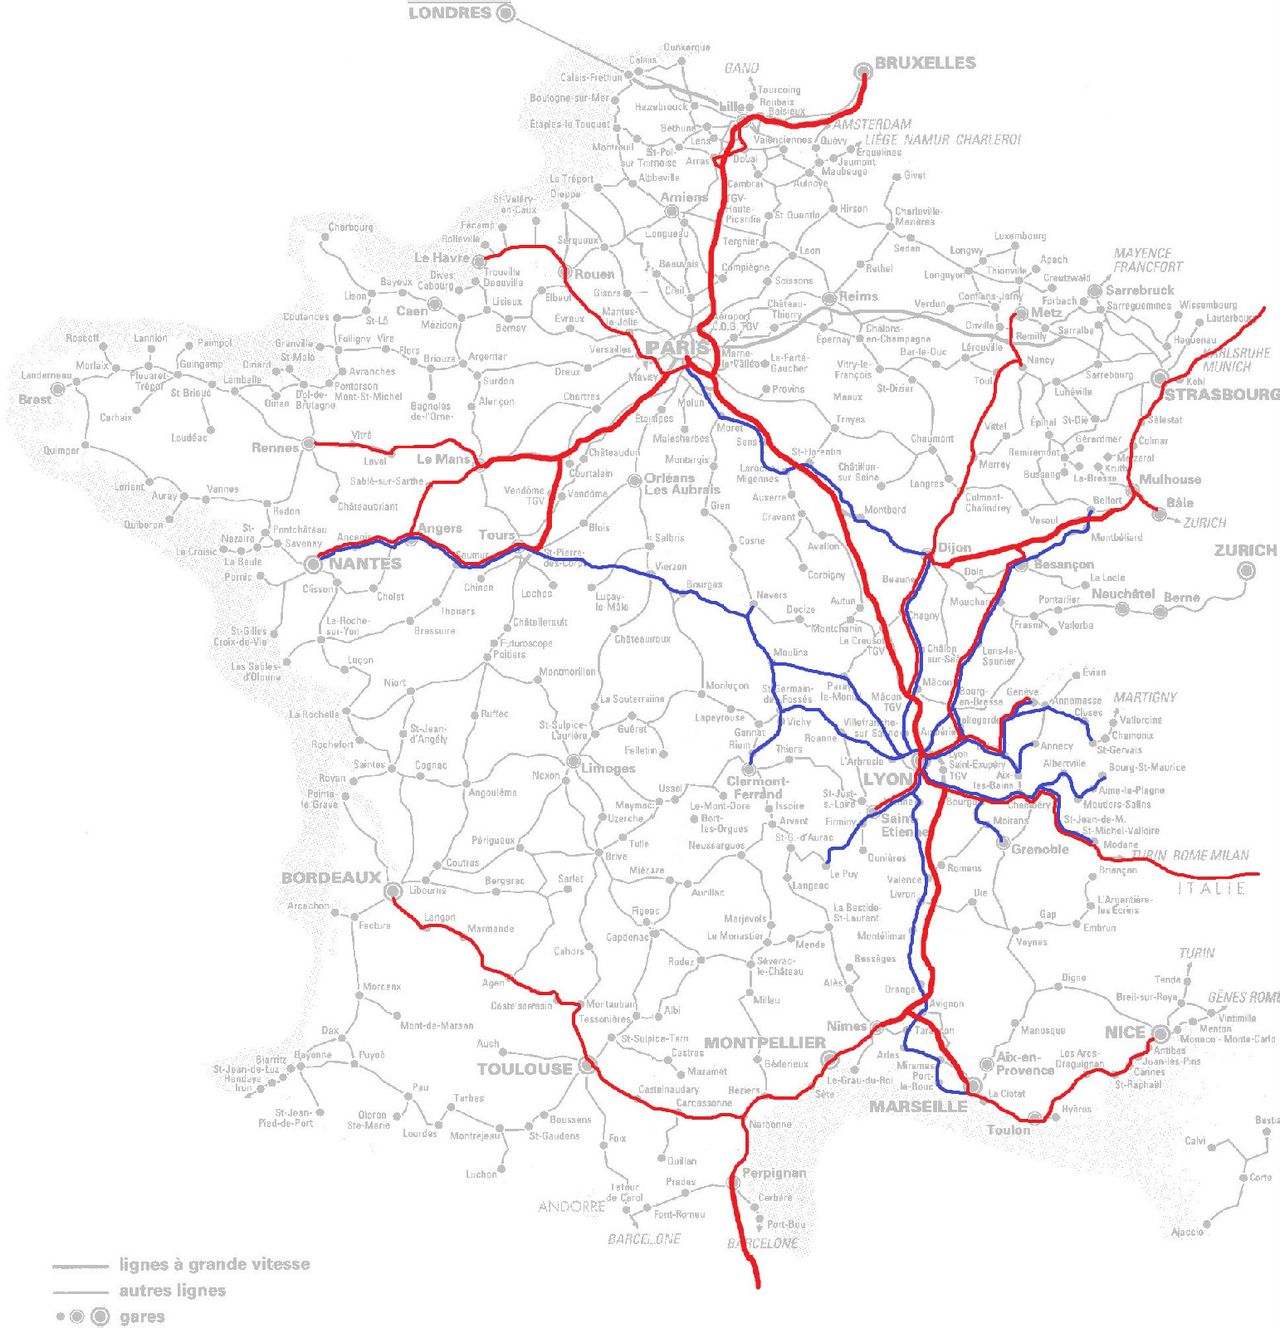 里昂帕丟站通達範圍（藍為慢車，紅為TGV）